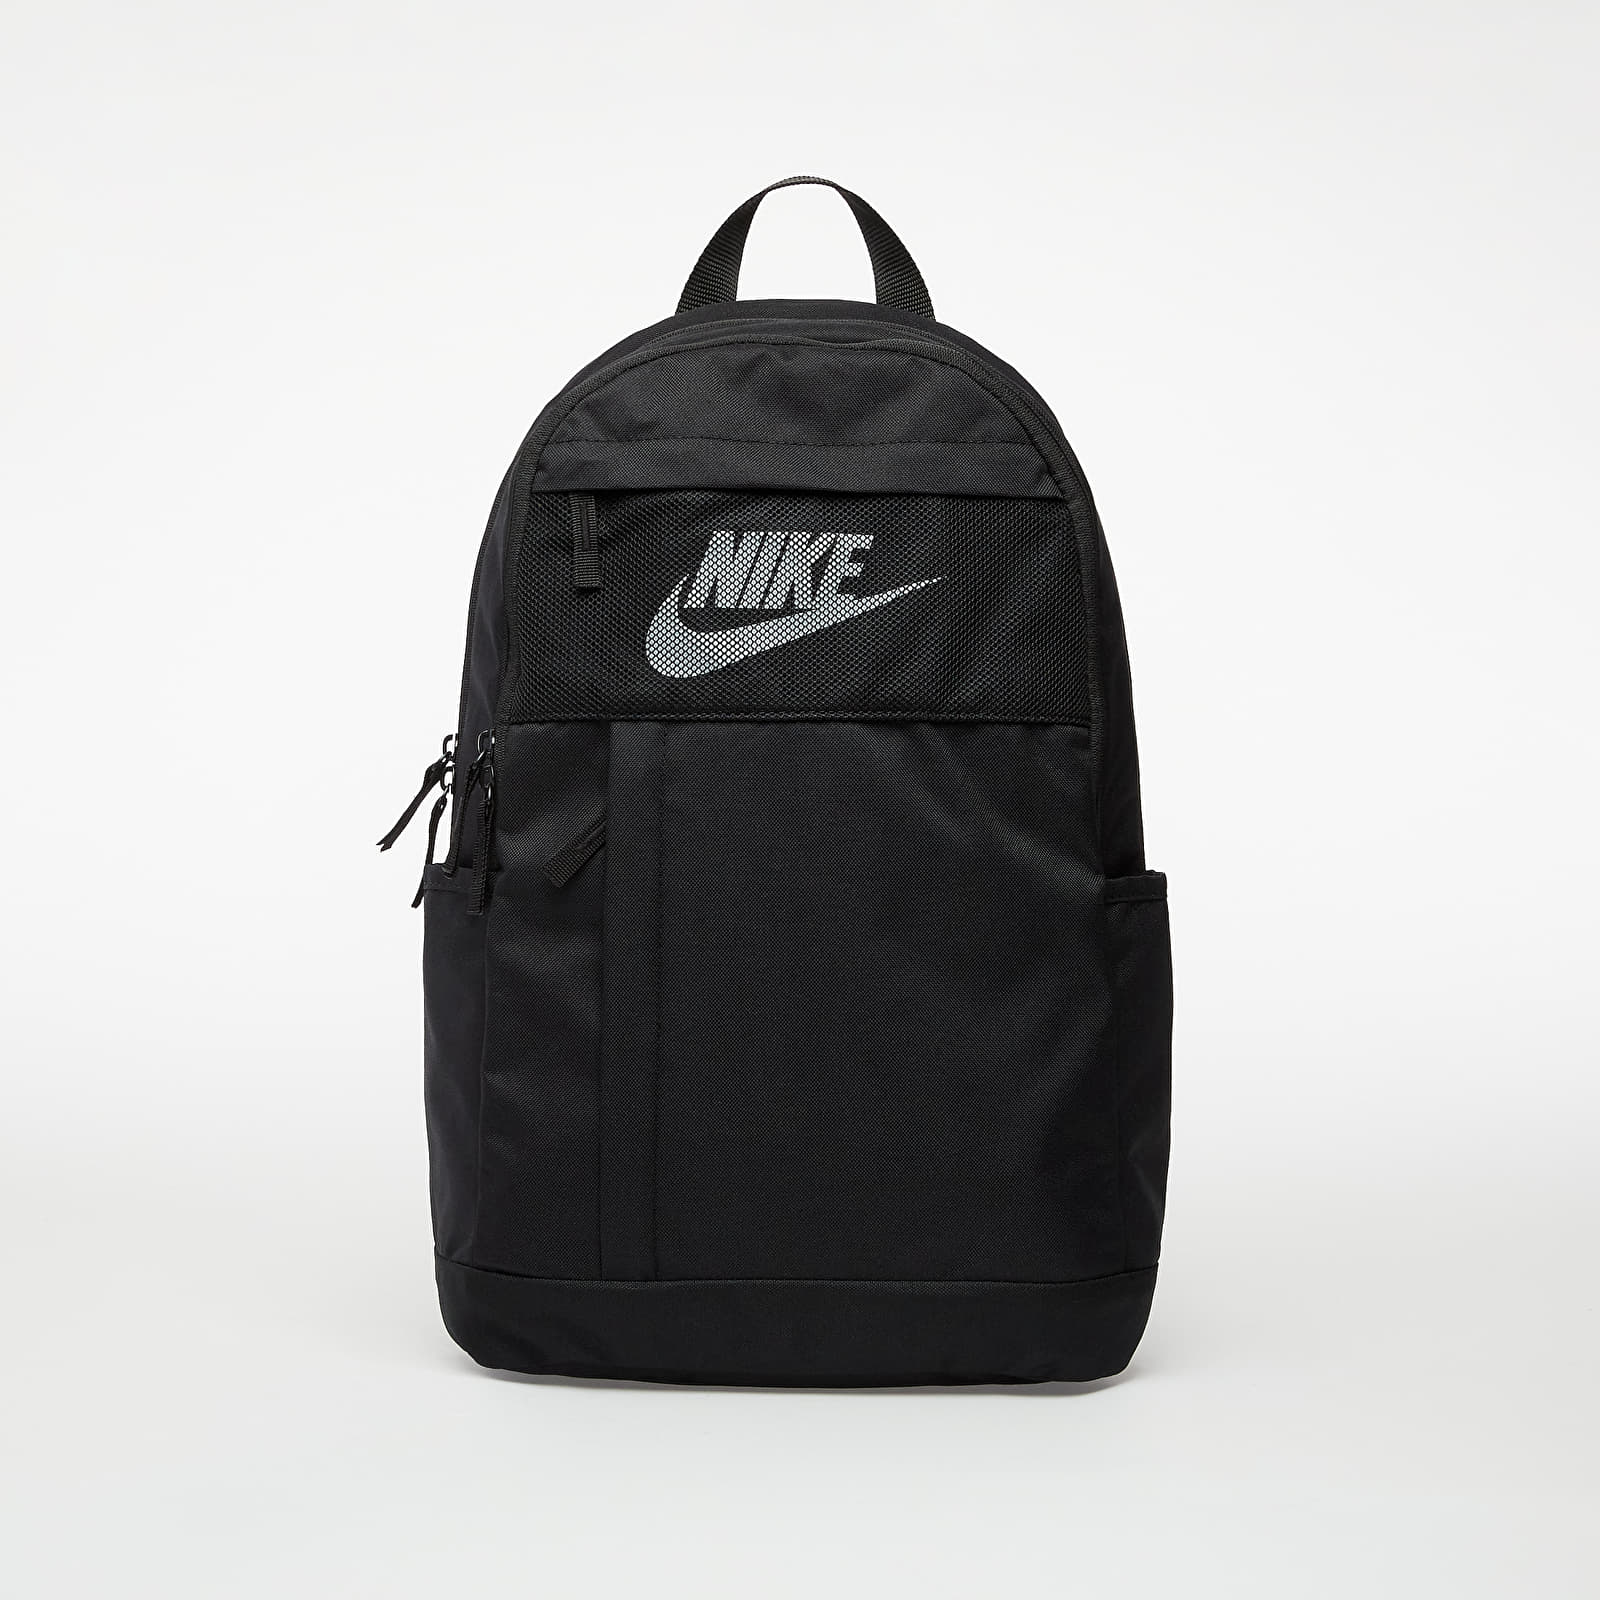 Ruksaci Nike Elemental LBR Backpack Black